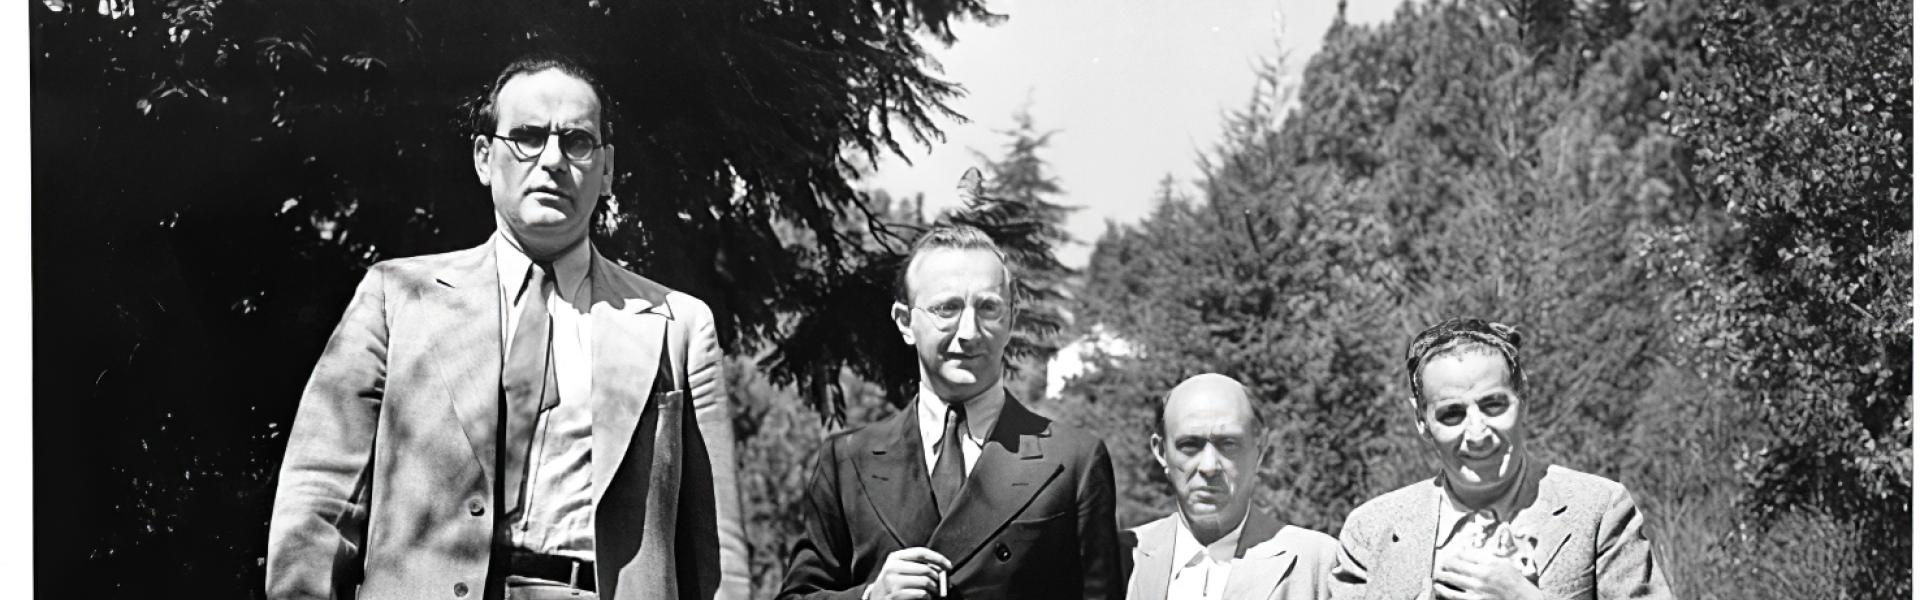 Otto Klemperer, Arnold Schoenberg, Ernst Toch in Santa Monica